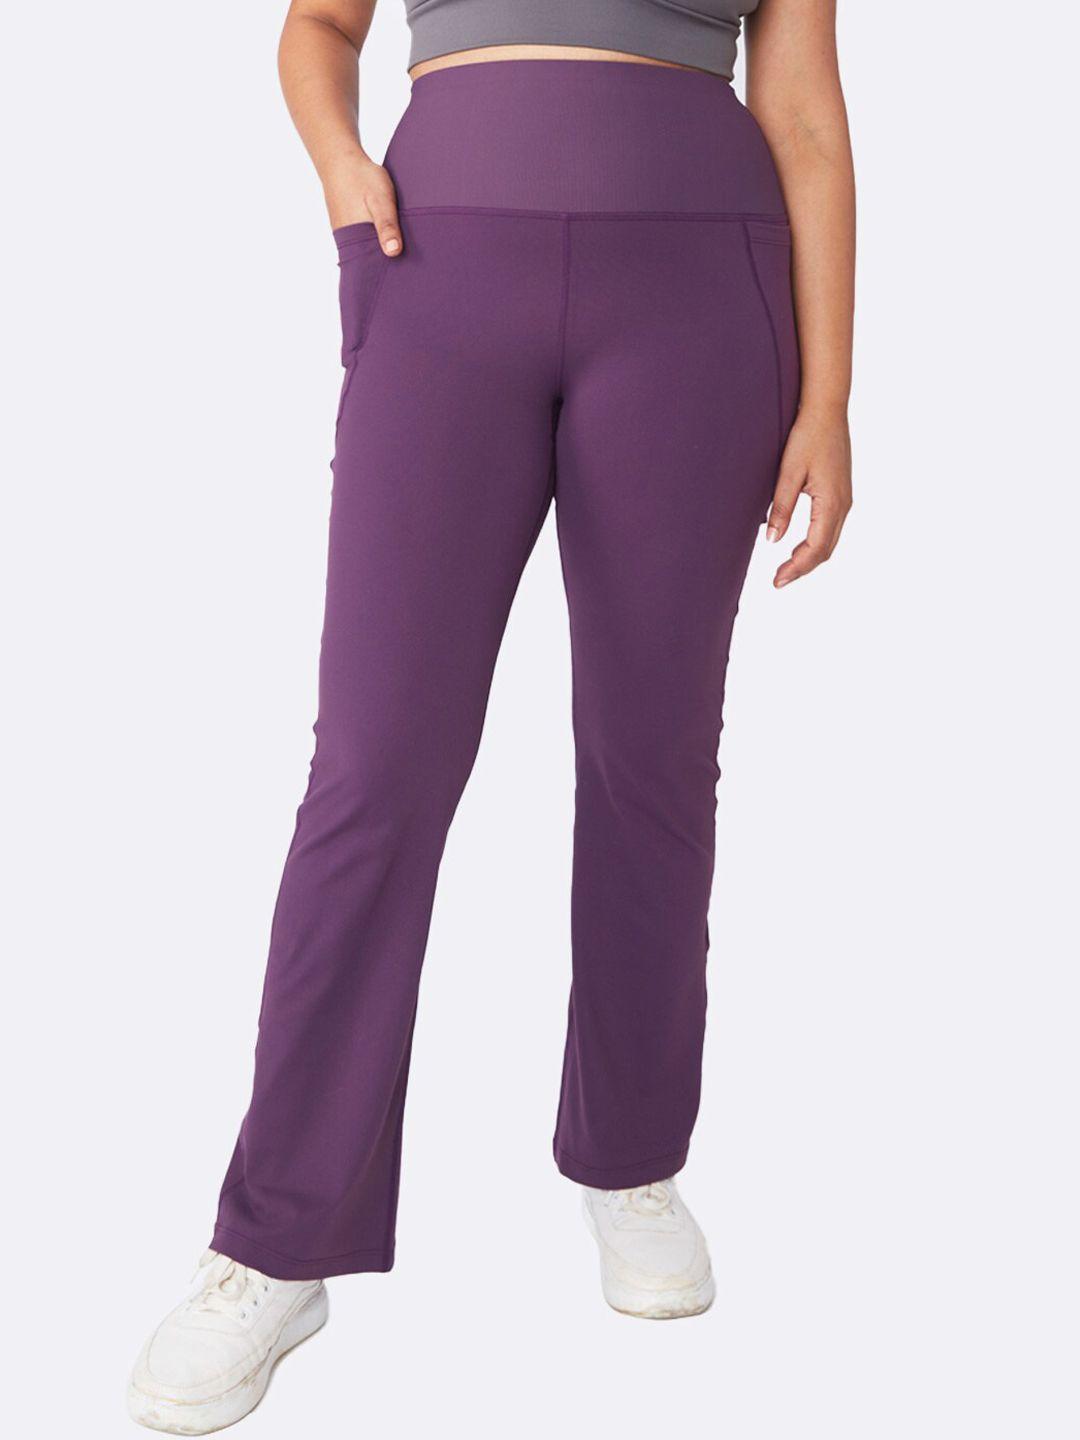 blissclub women purple solid bootcut track pants